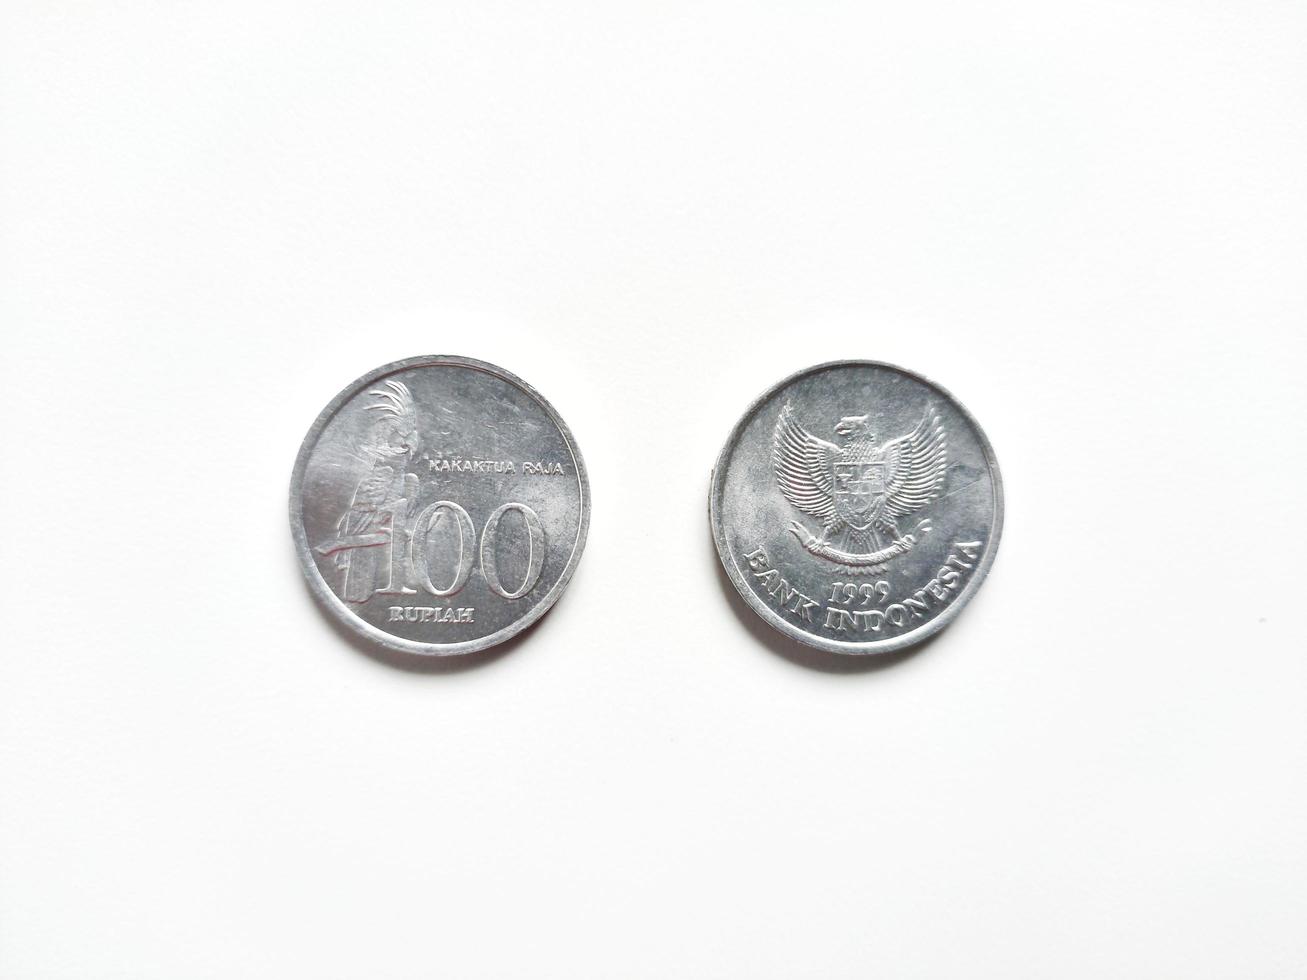 Indonesische Rupiah-Münze mit einem Wert von 200 Rupiah, die 1999 herausgegeben wurde, mit dem Symbol Kakadu auf der Vorderseite. Kakadu ist ein Name eines einheimischen Vogels in Indonesien foto